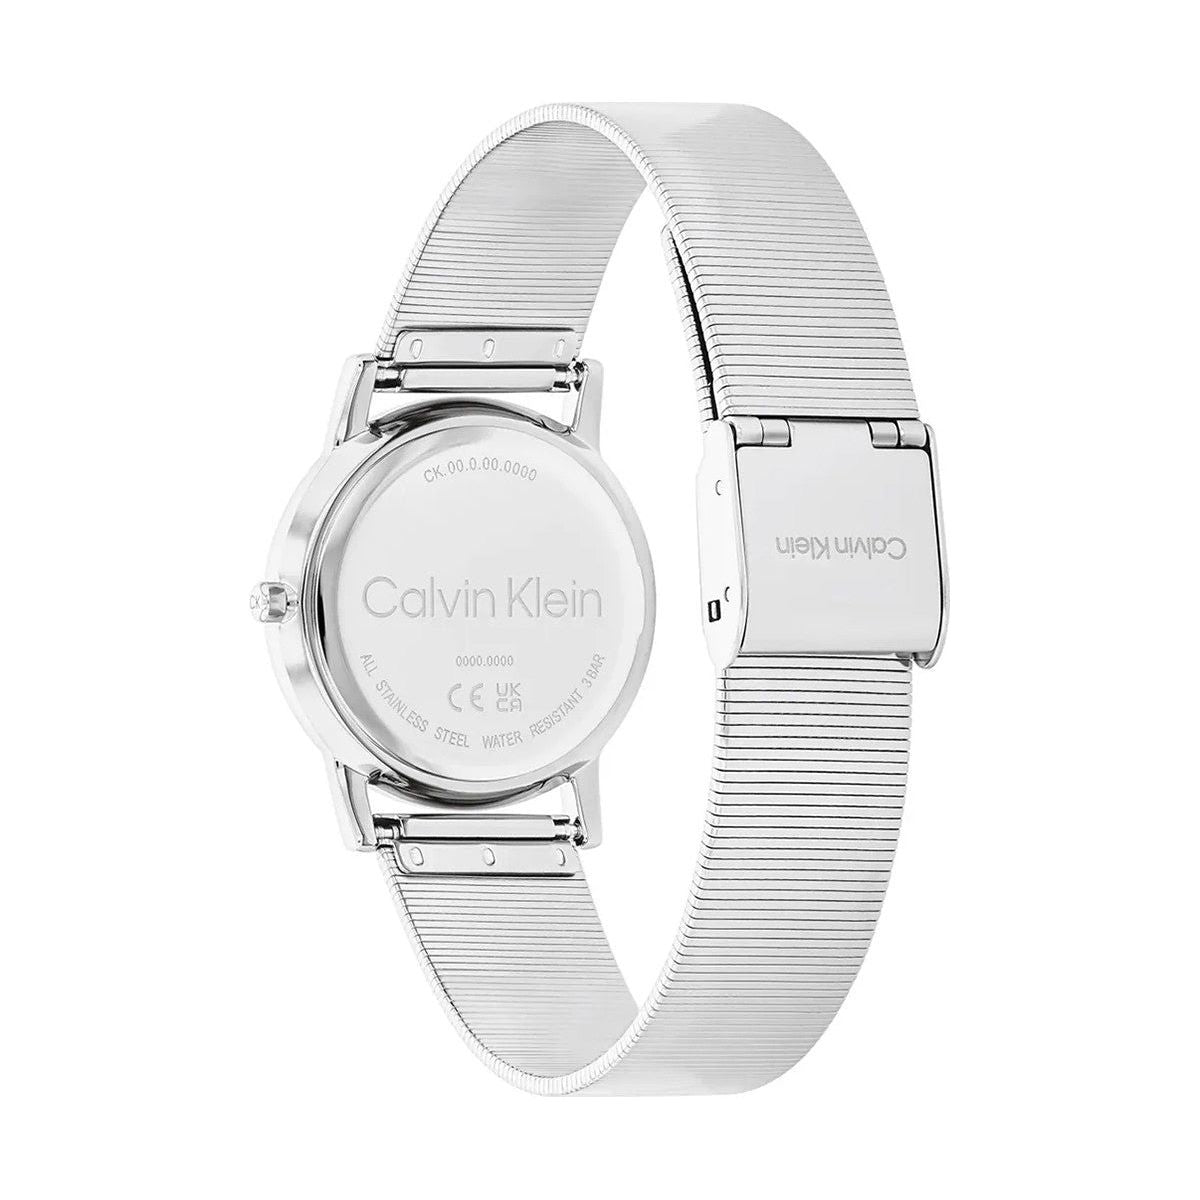 CK CALVIN KLEIN NEW COLLECTION CK CALVIN KLEIN NEW COLLECTION WATCHES Mod. 25100033 WATCHES ck-calvin-klein-new-collection-watches-mod-25100033